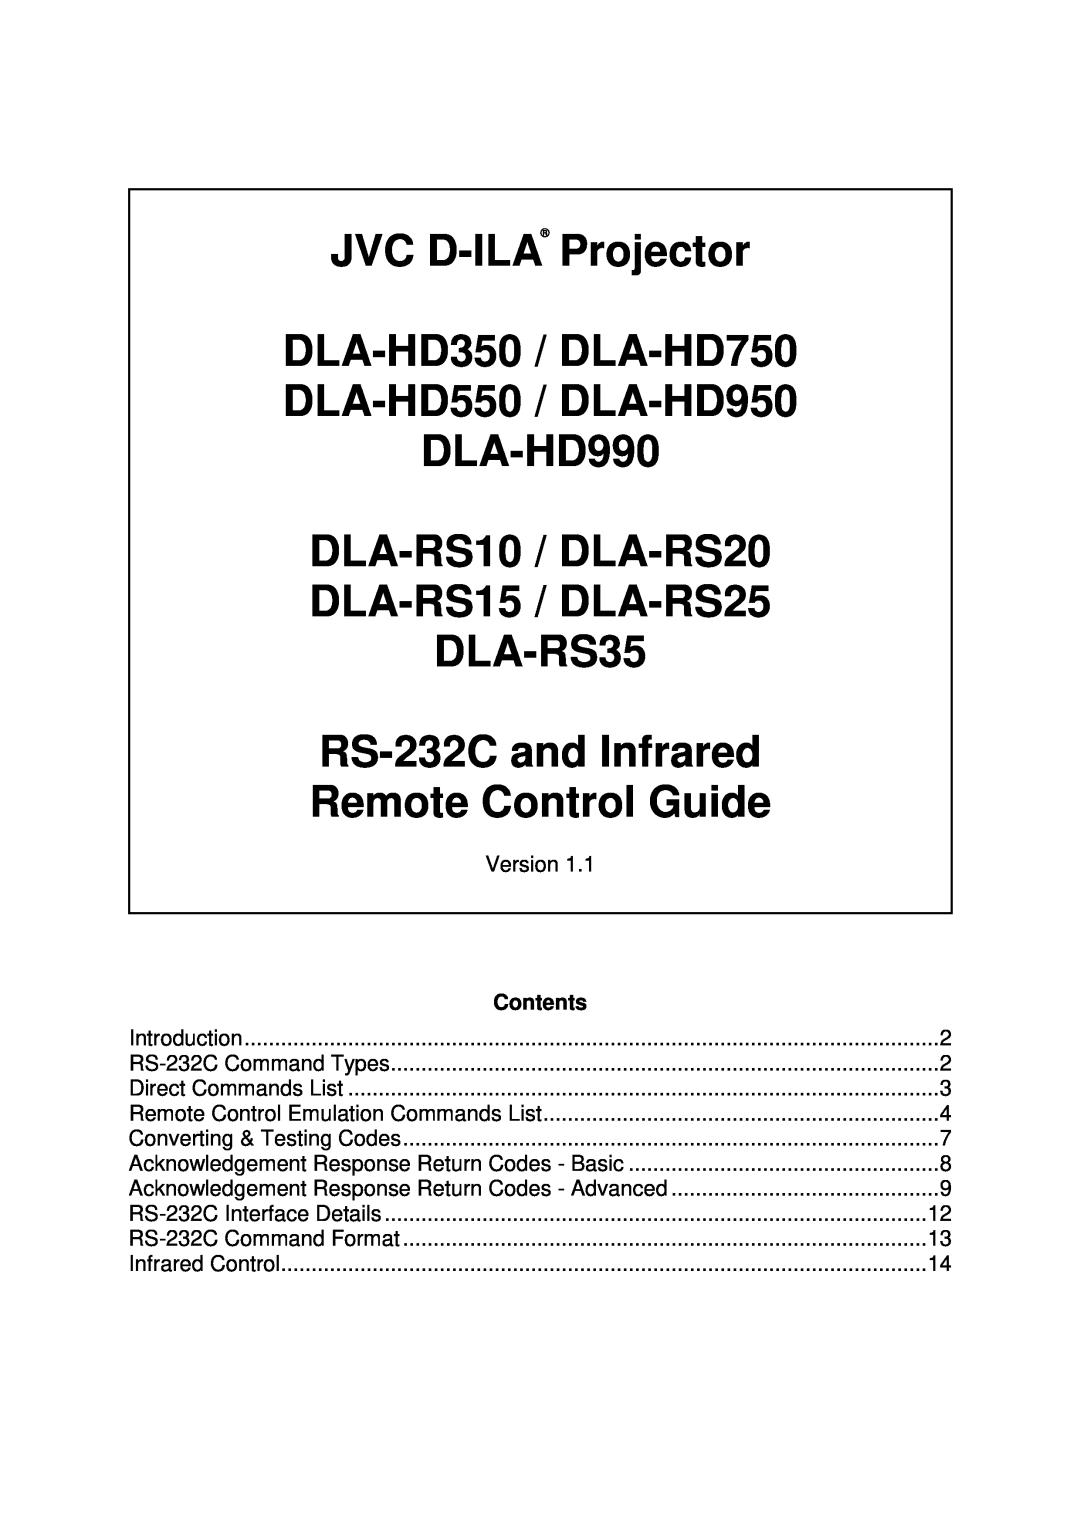 JVC RS-232C, DLA-HD990, DLA-RS25, DLA-RS15 manual JVC D-ILA Projector DLA-HD350 / DLA-HD750 DLA-HD550 / DLA-HD950, Contents 